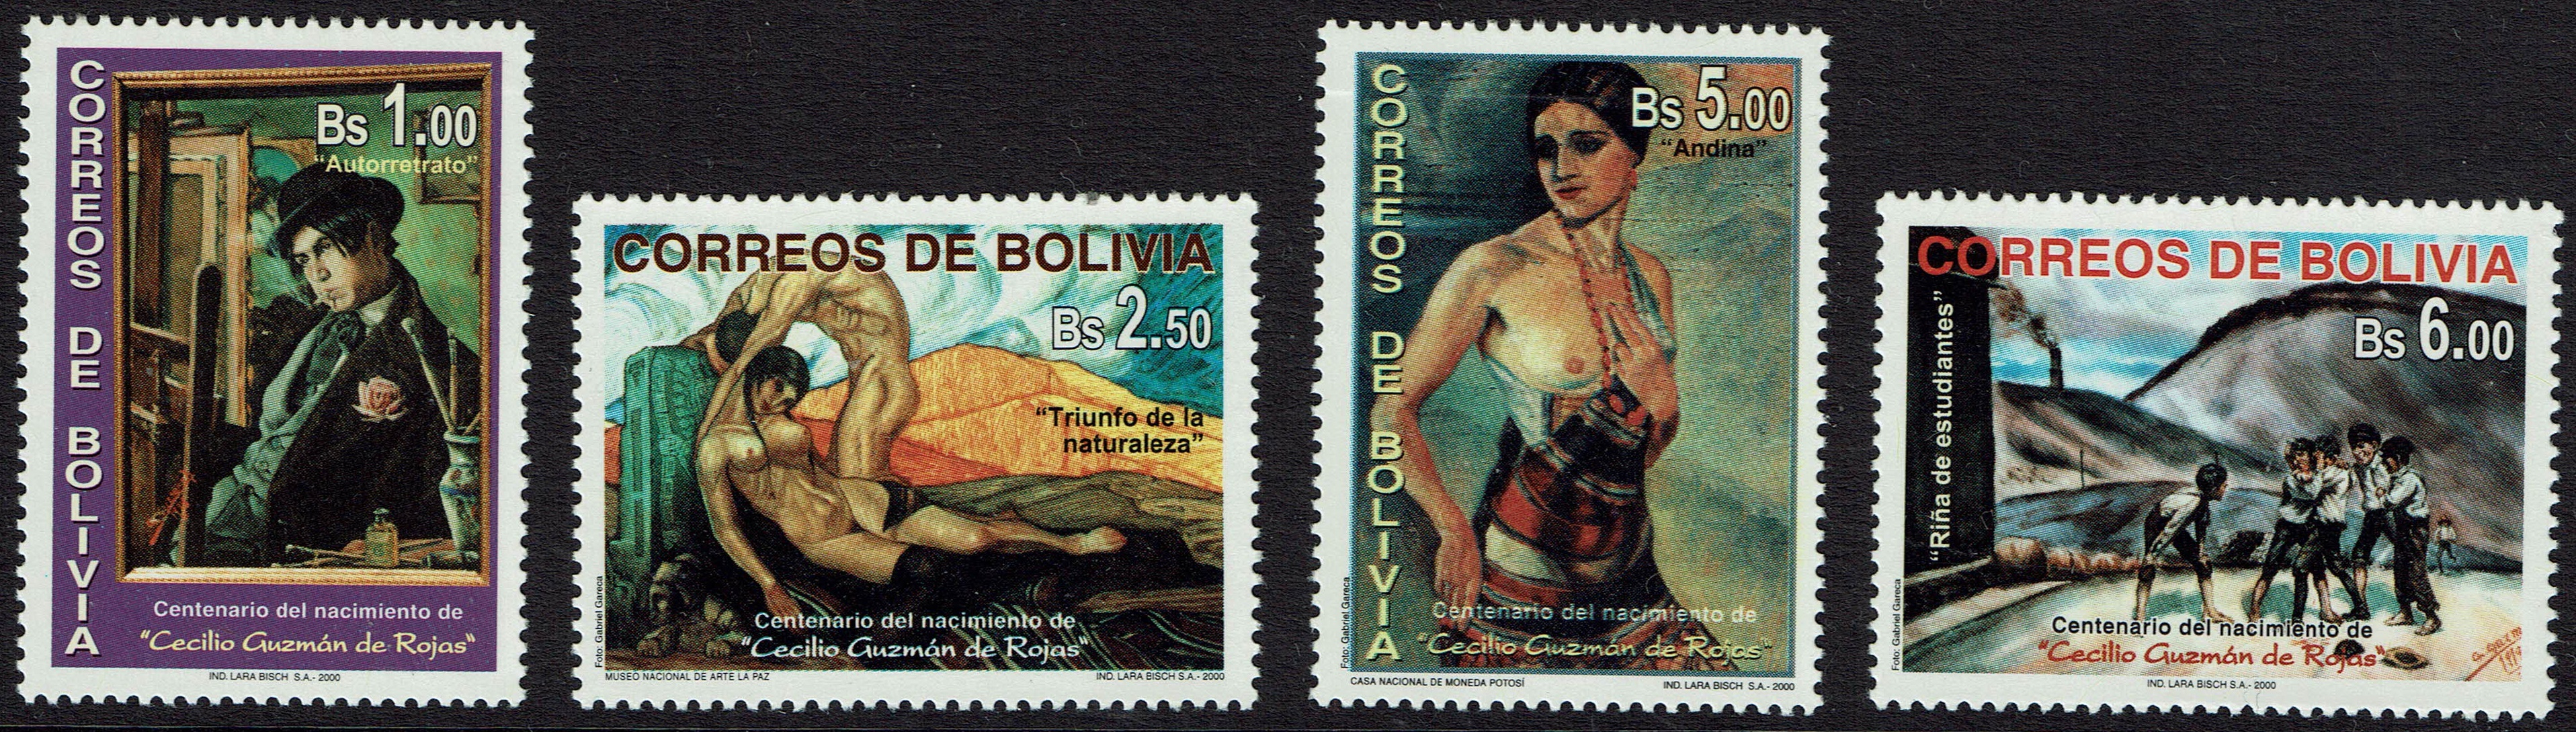 Bolivia SG 1528-31